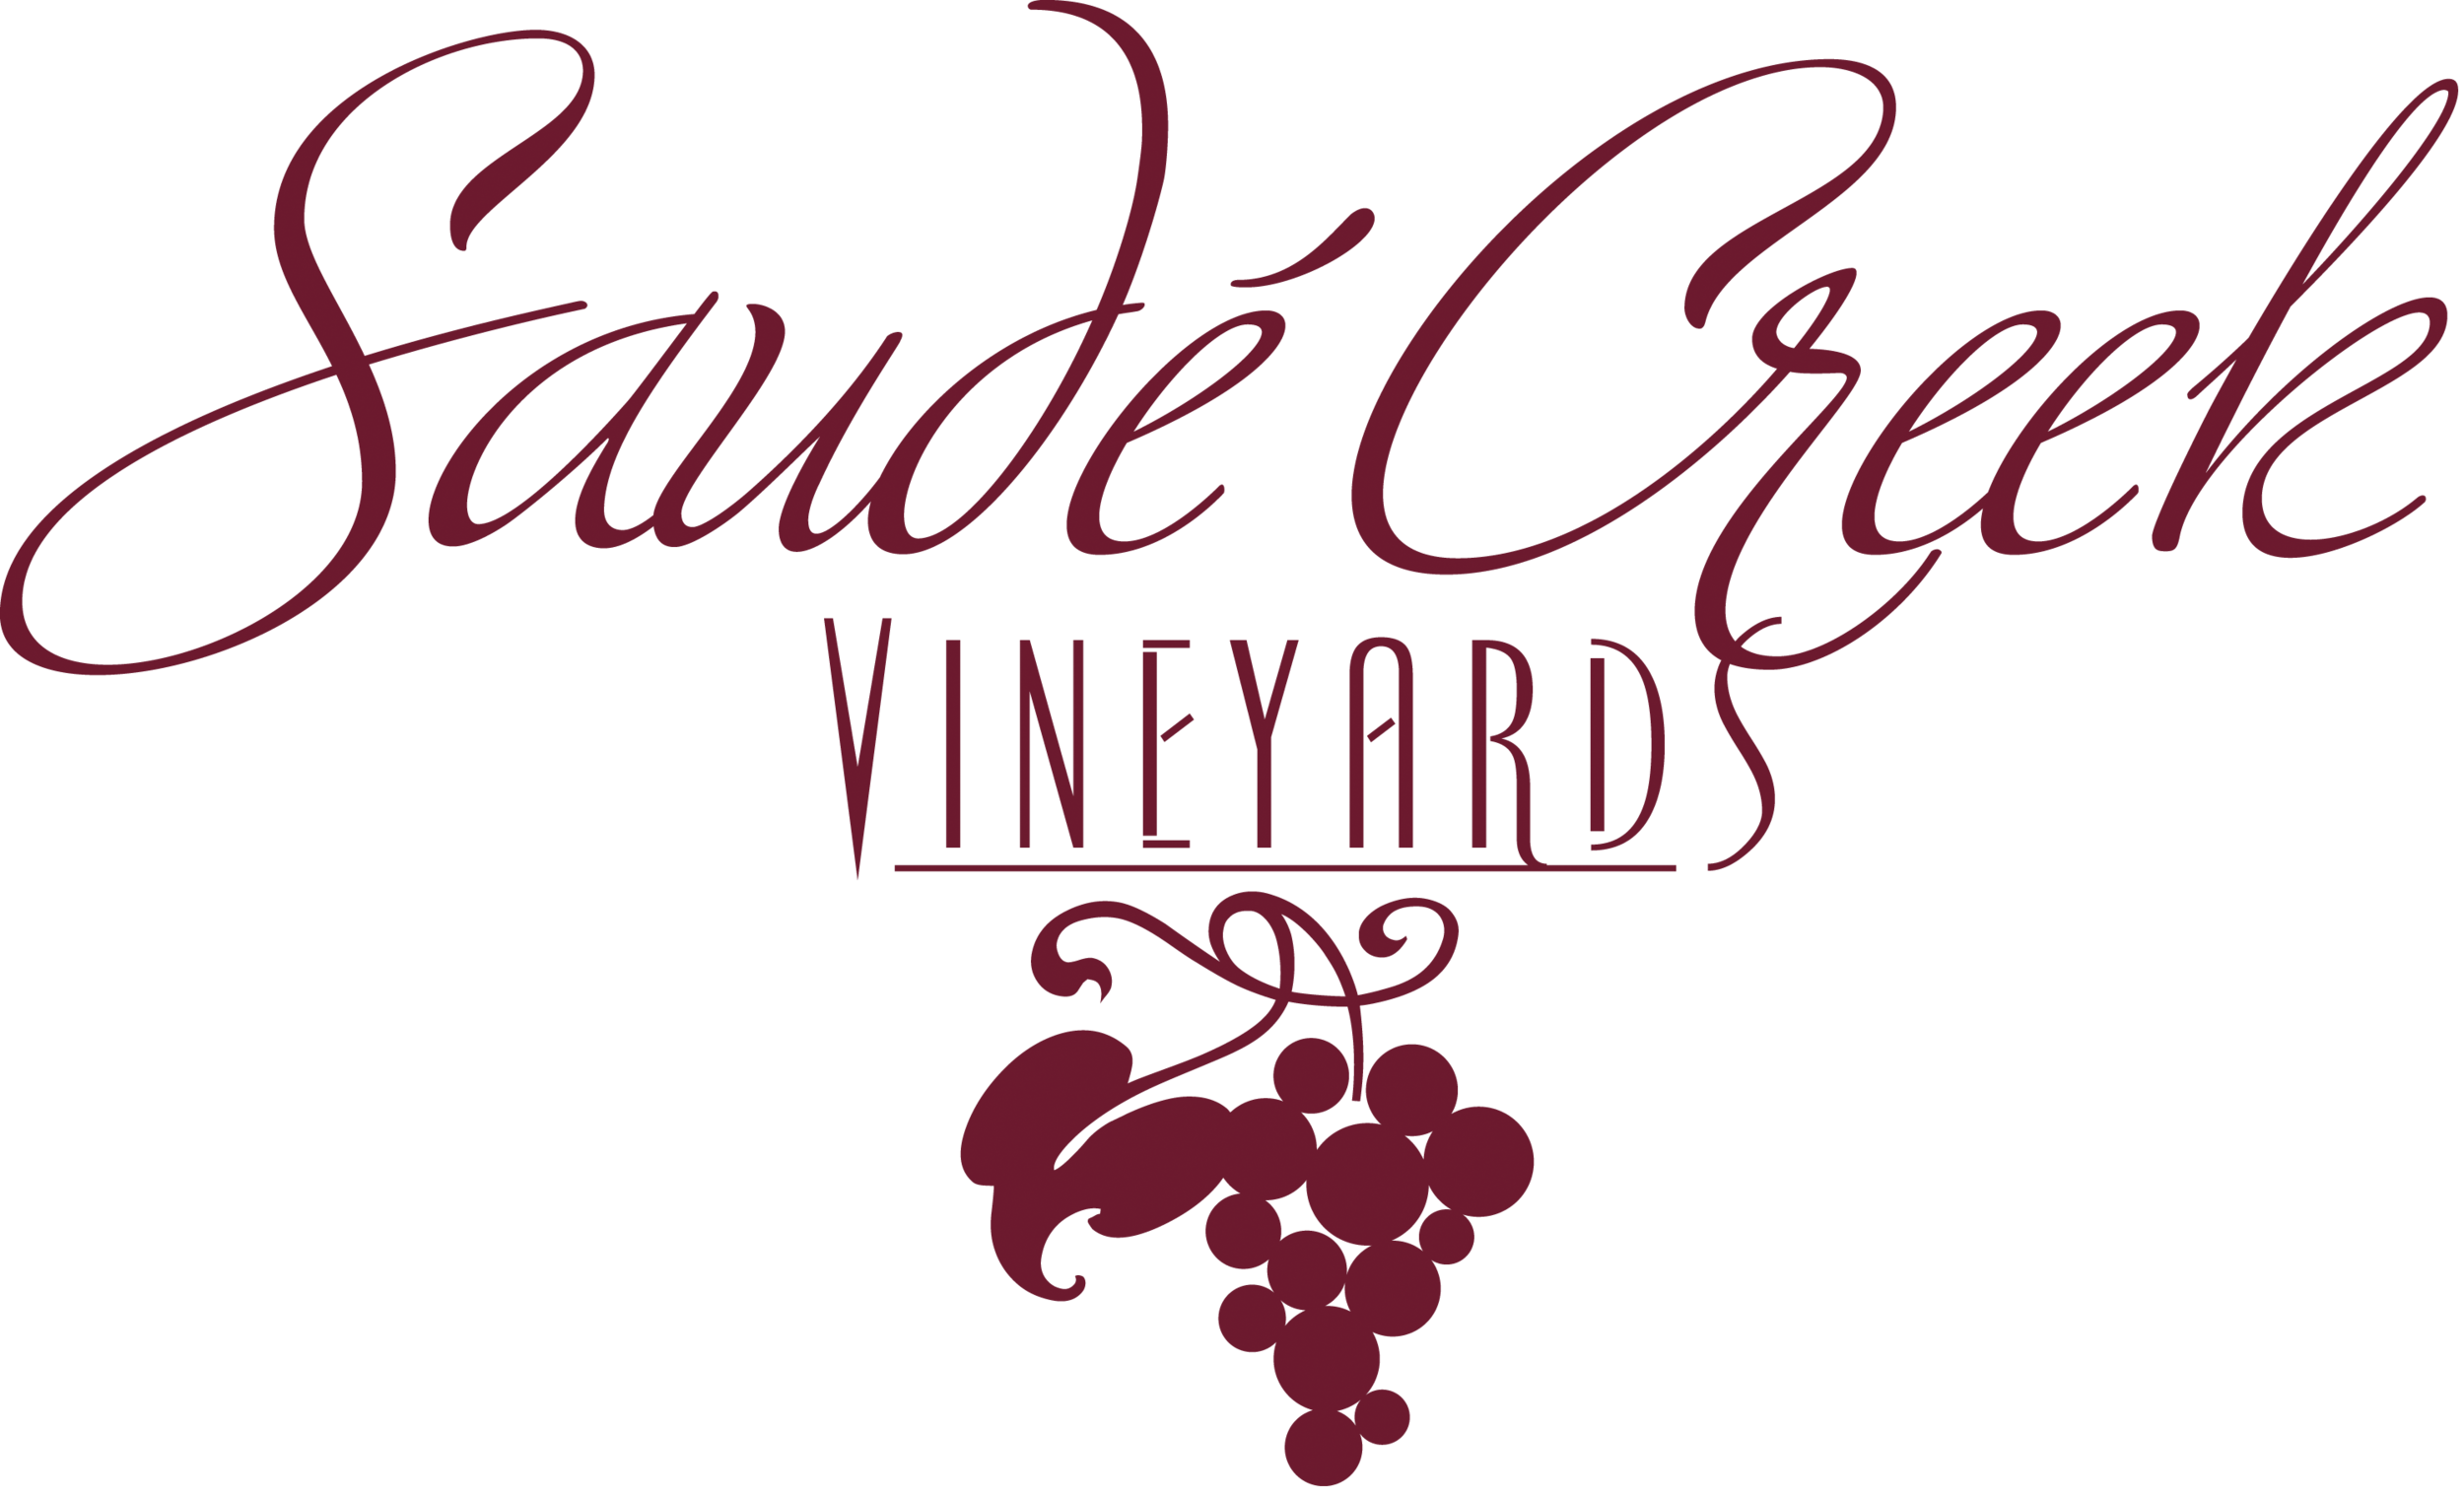 Saudé Creek Vineyards